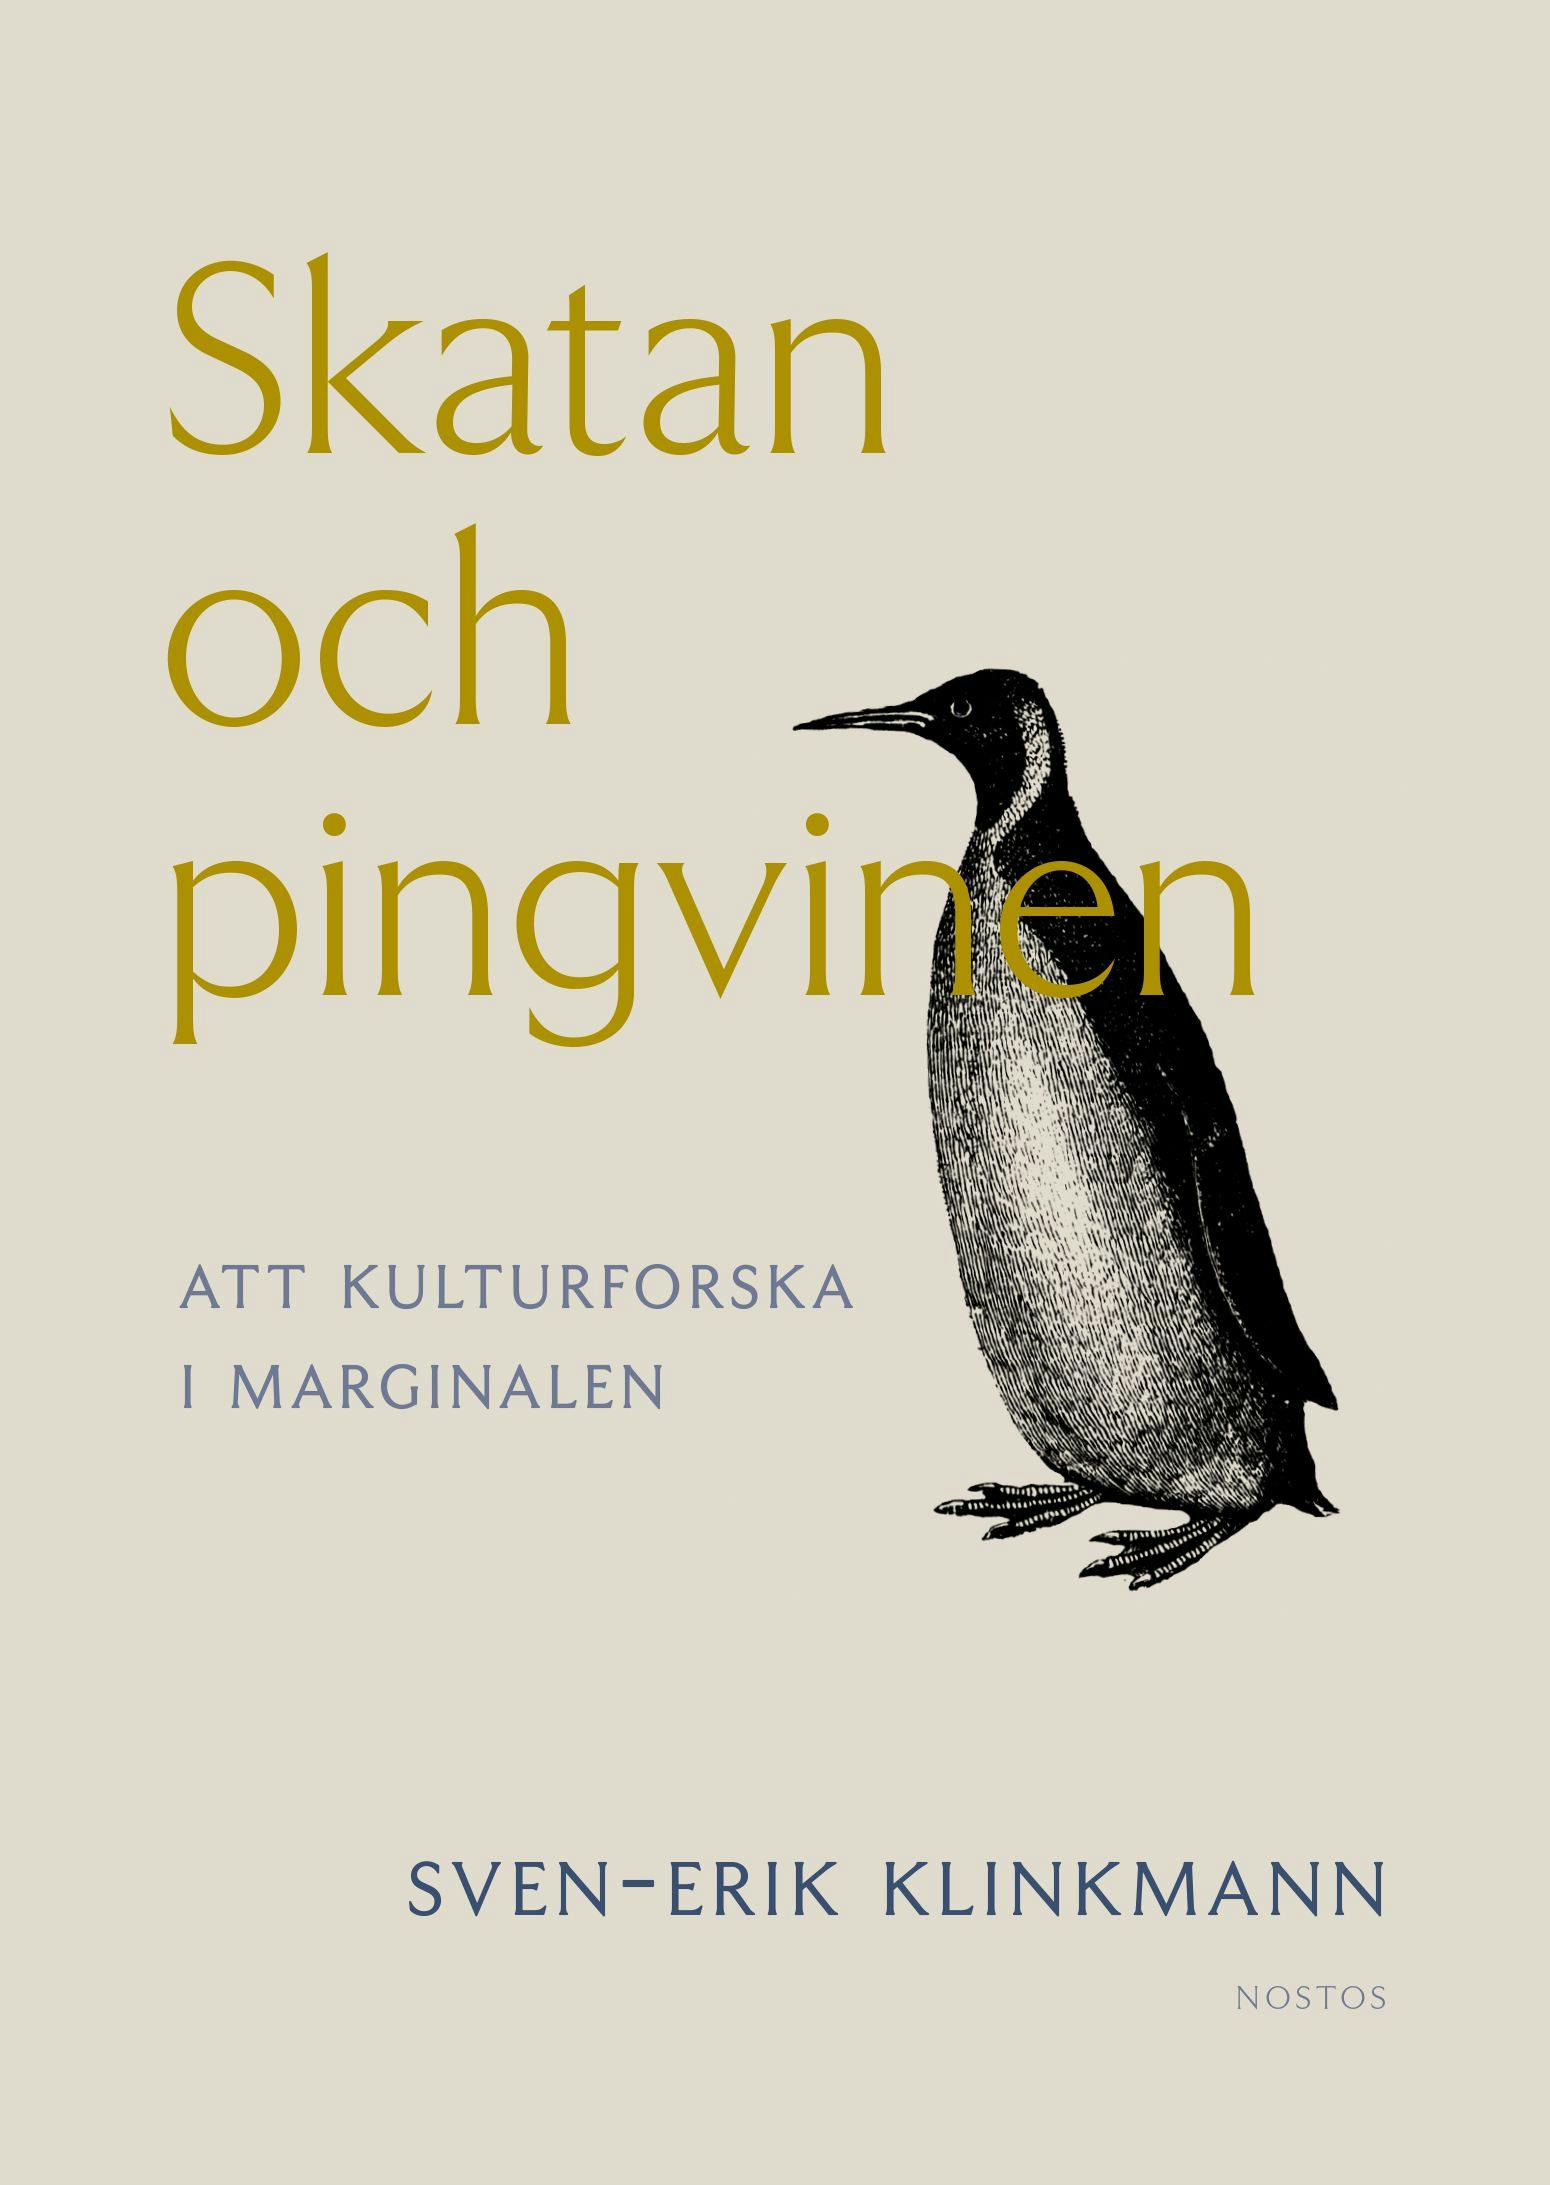 Cover image from Skatan och pingvinen